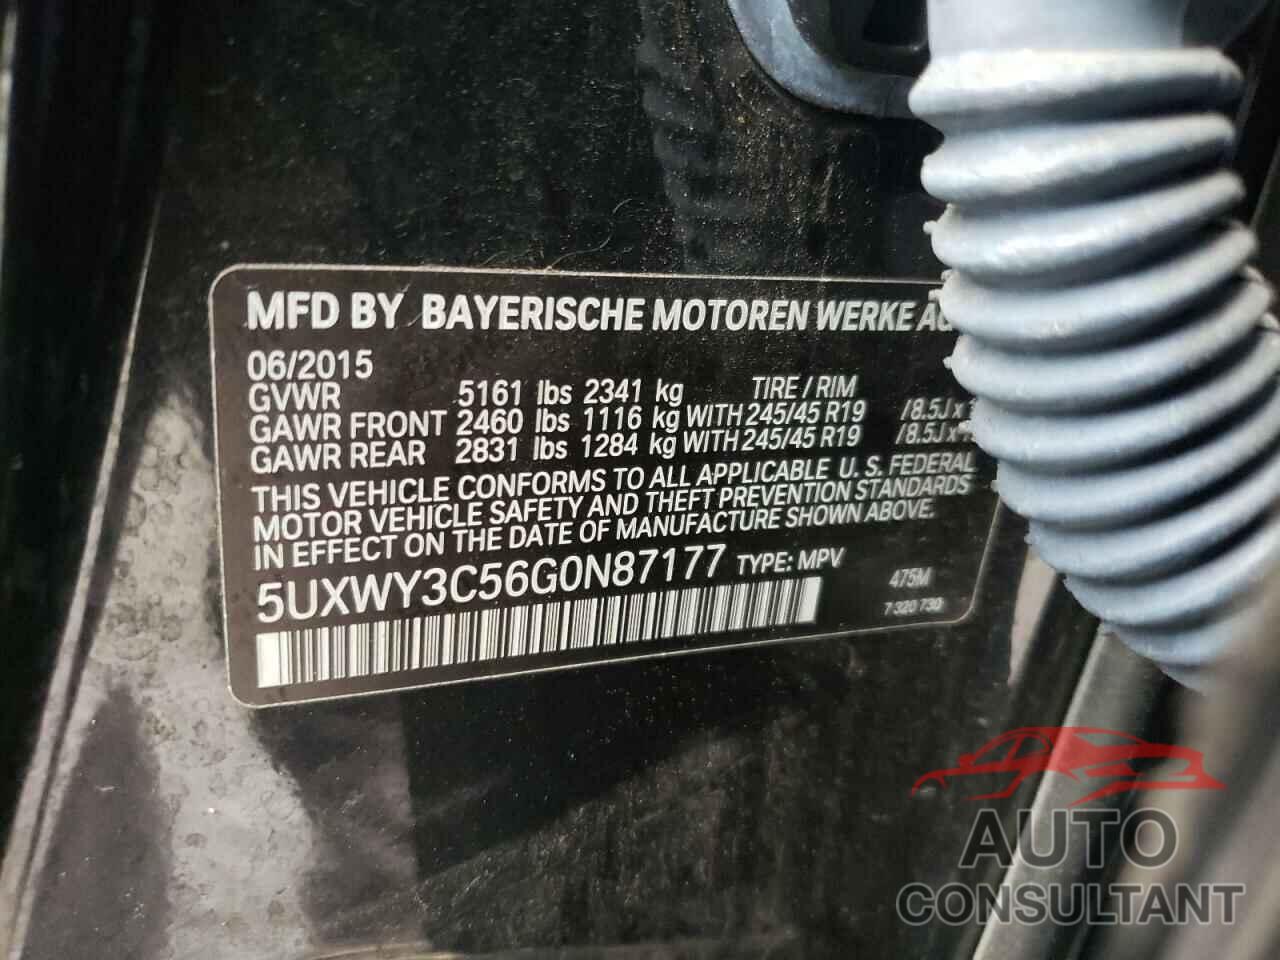 BMW X3 2016 - 5UXWY3C56G0N87177